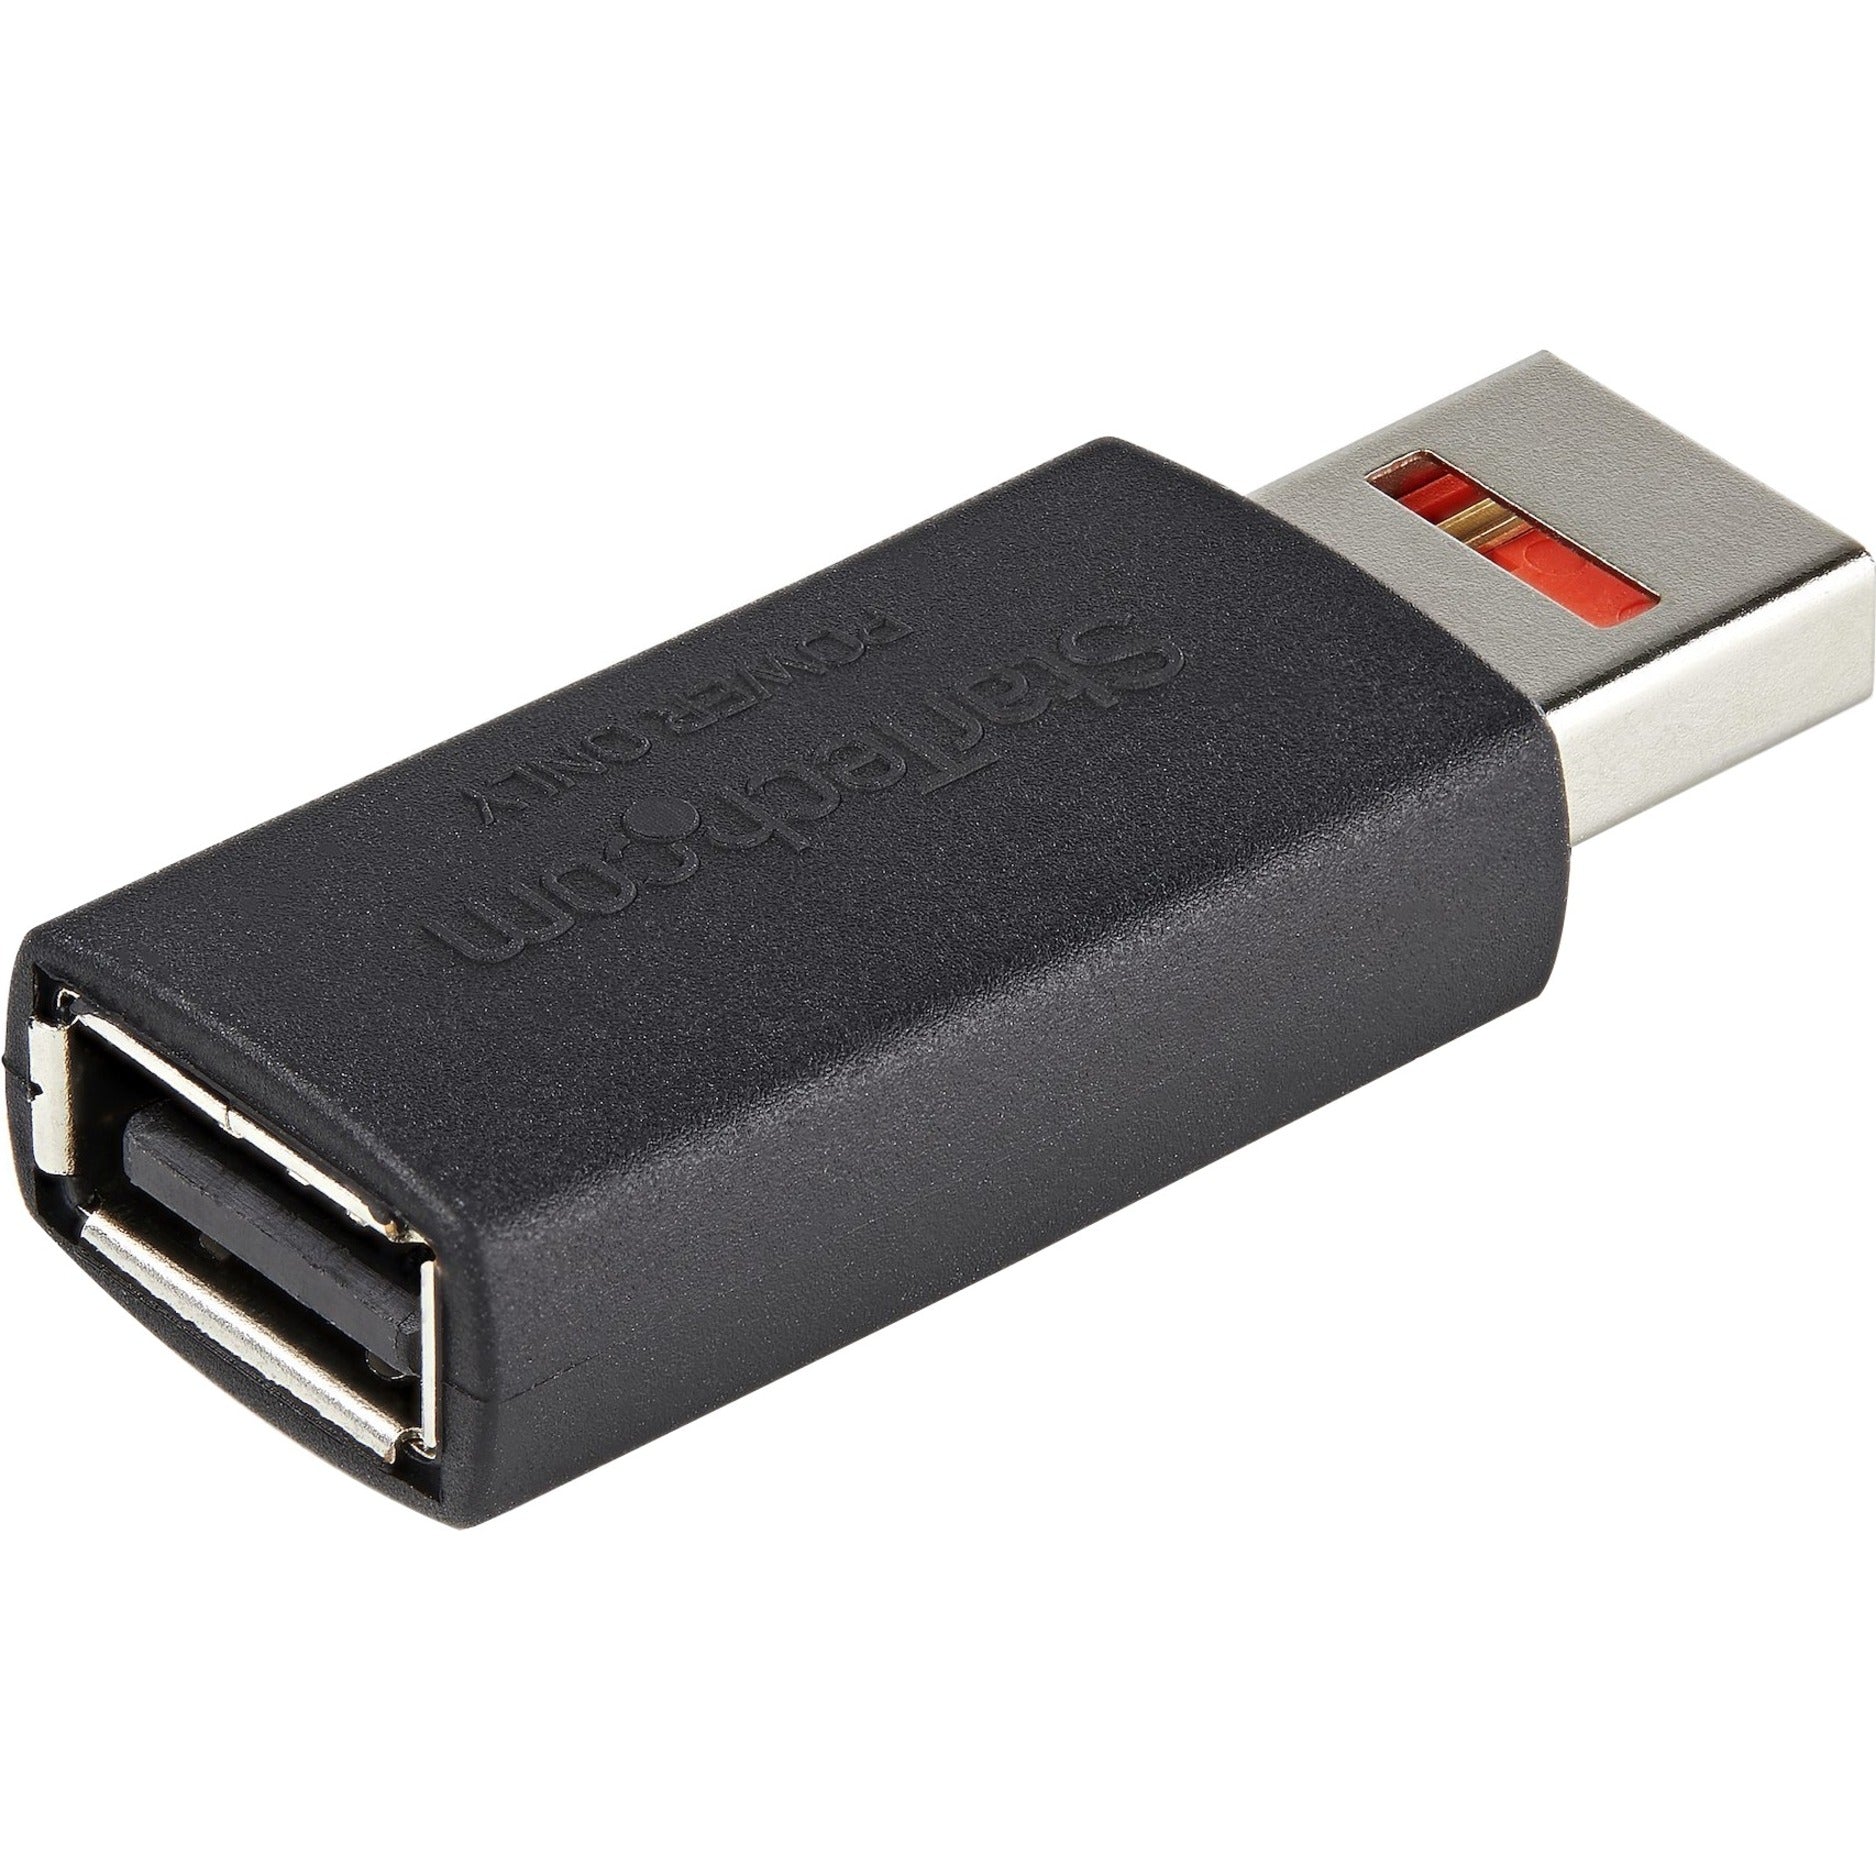 StarTech.com USBSCHAAMF Adaptateur de transfert de données USB Adaptateur de charge/blocage de données USB-A mâle/femelle pour charge uniquement pour téléphone/tablette